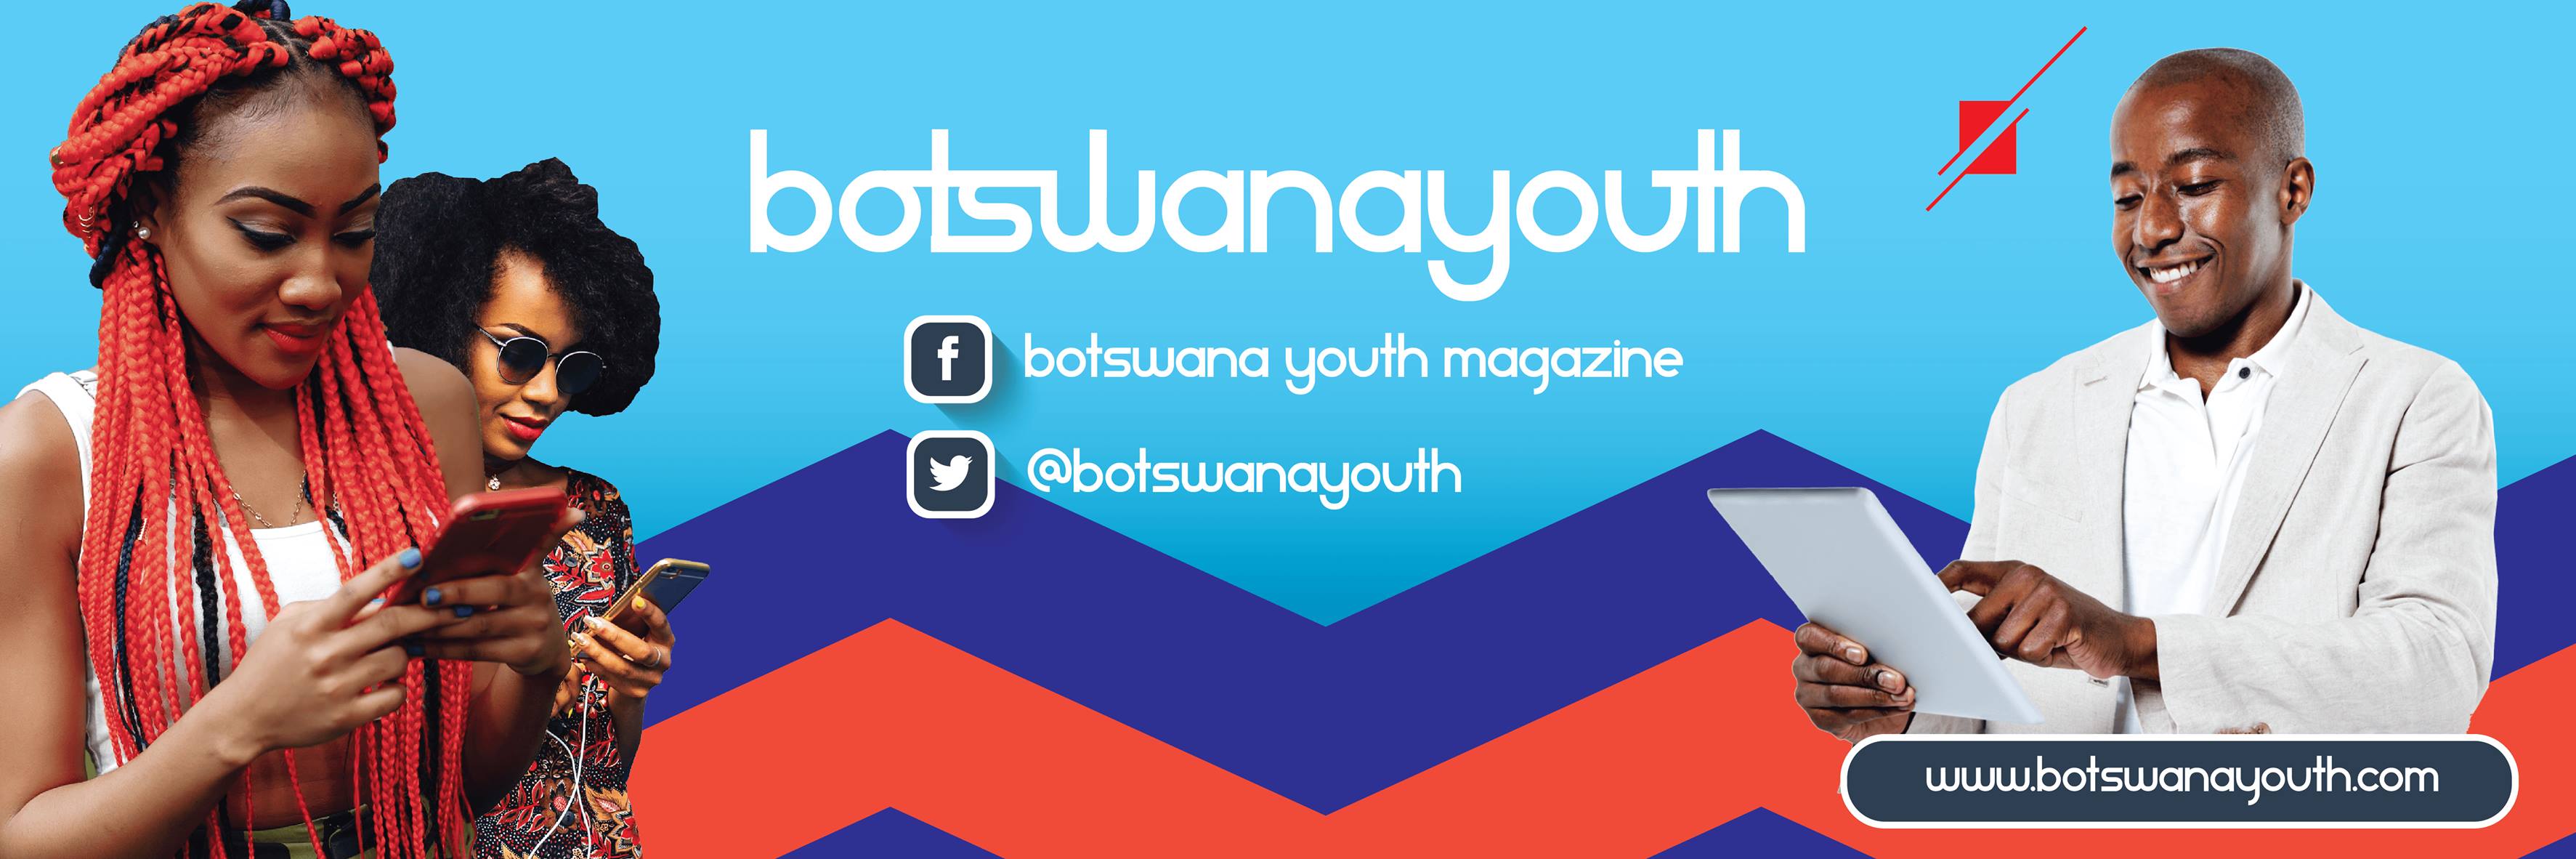 About Botswana Youth Magazine Botswana Youth Magazine